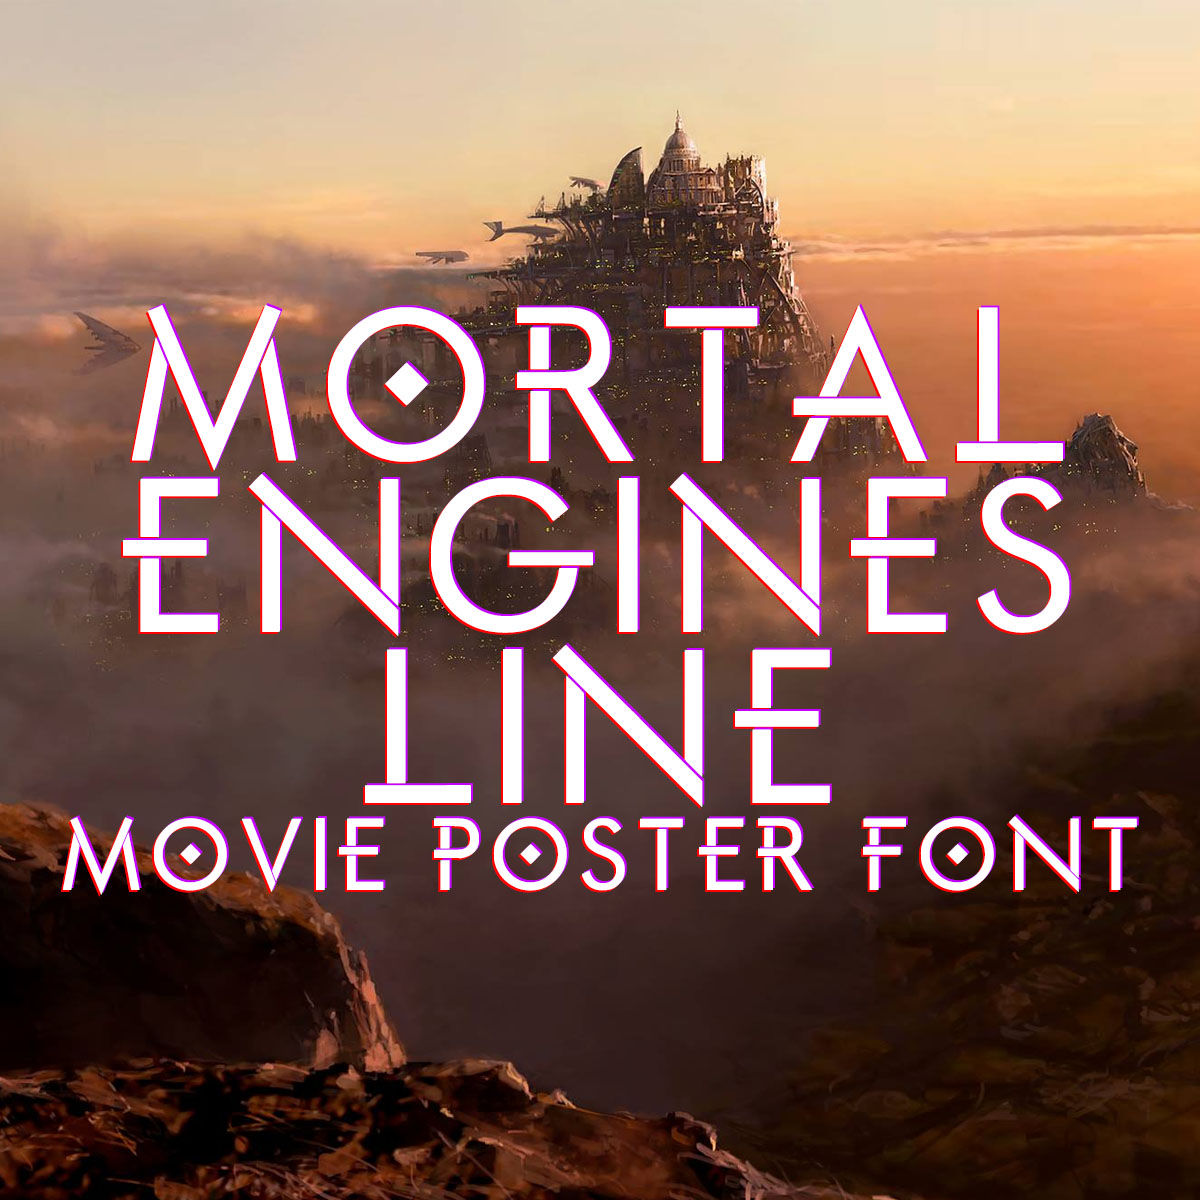 Mortal Engines Line font